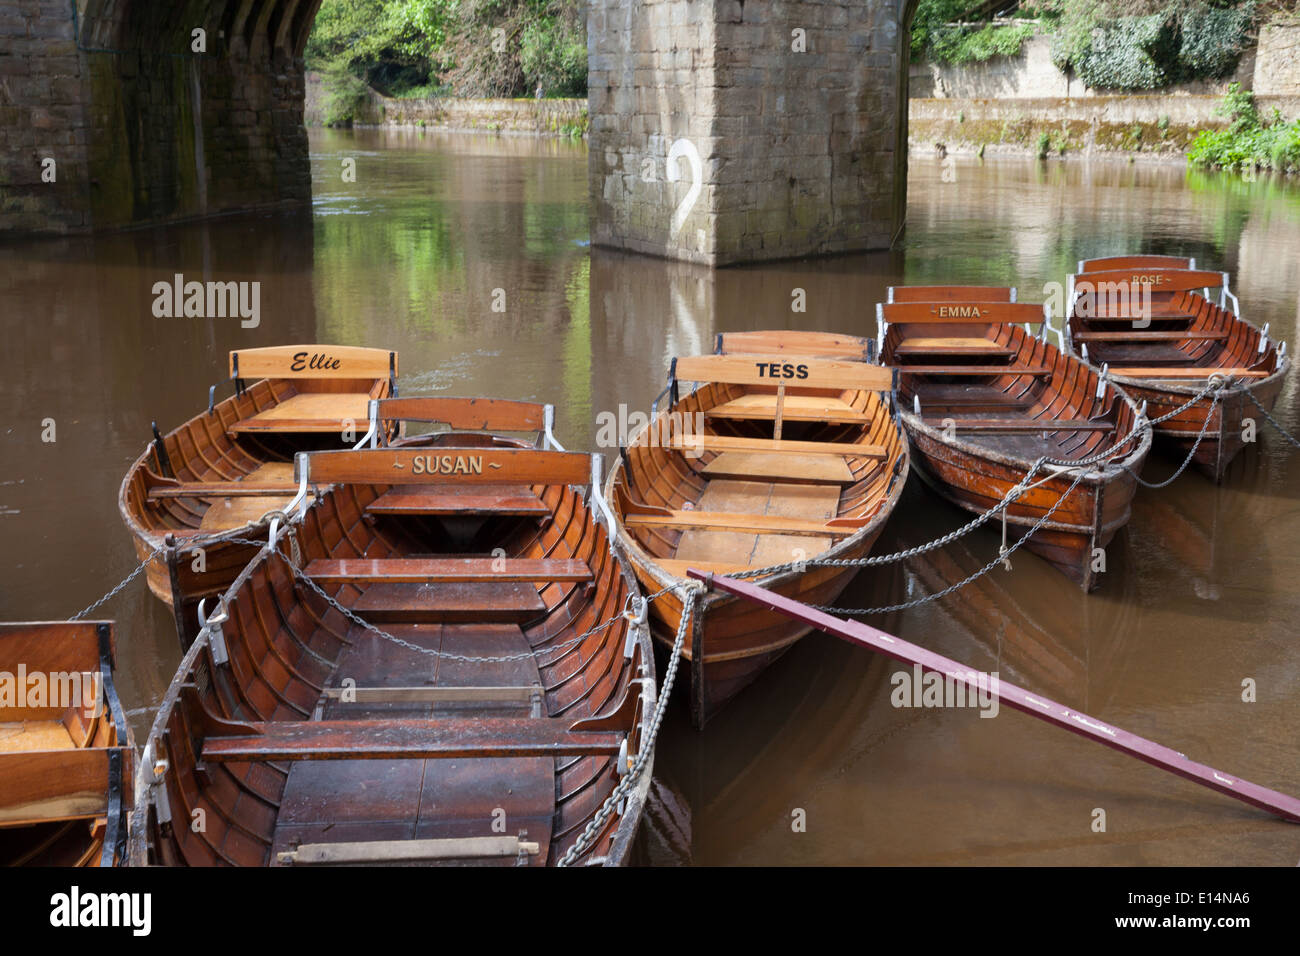 Botes en el río desgaste, Durham Foto de stock